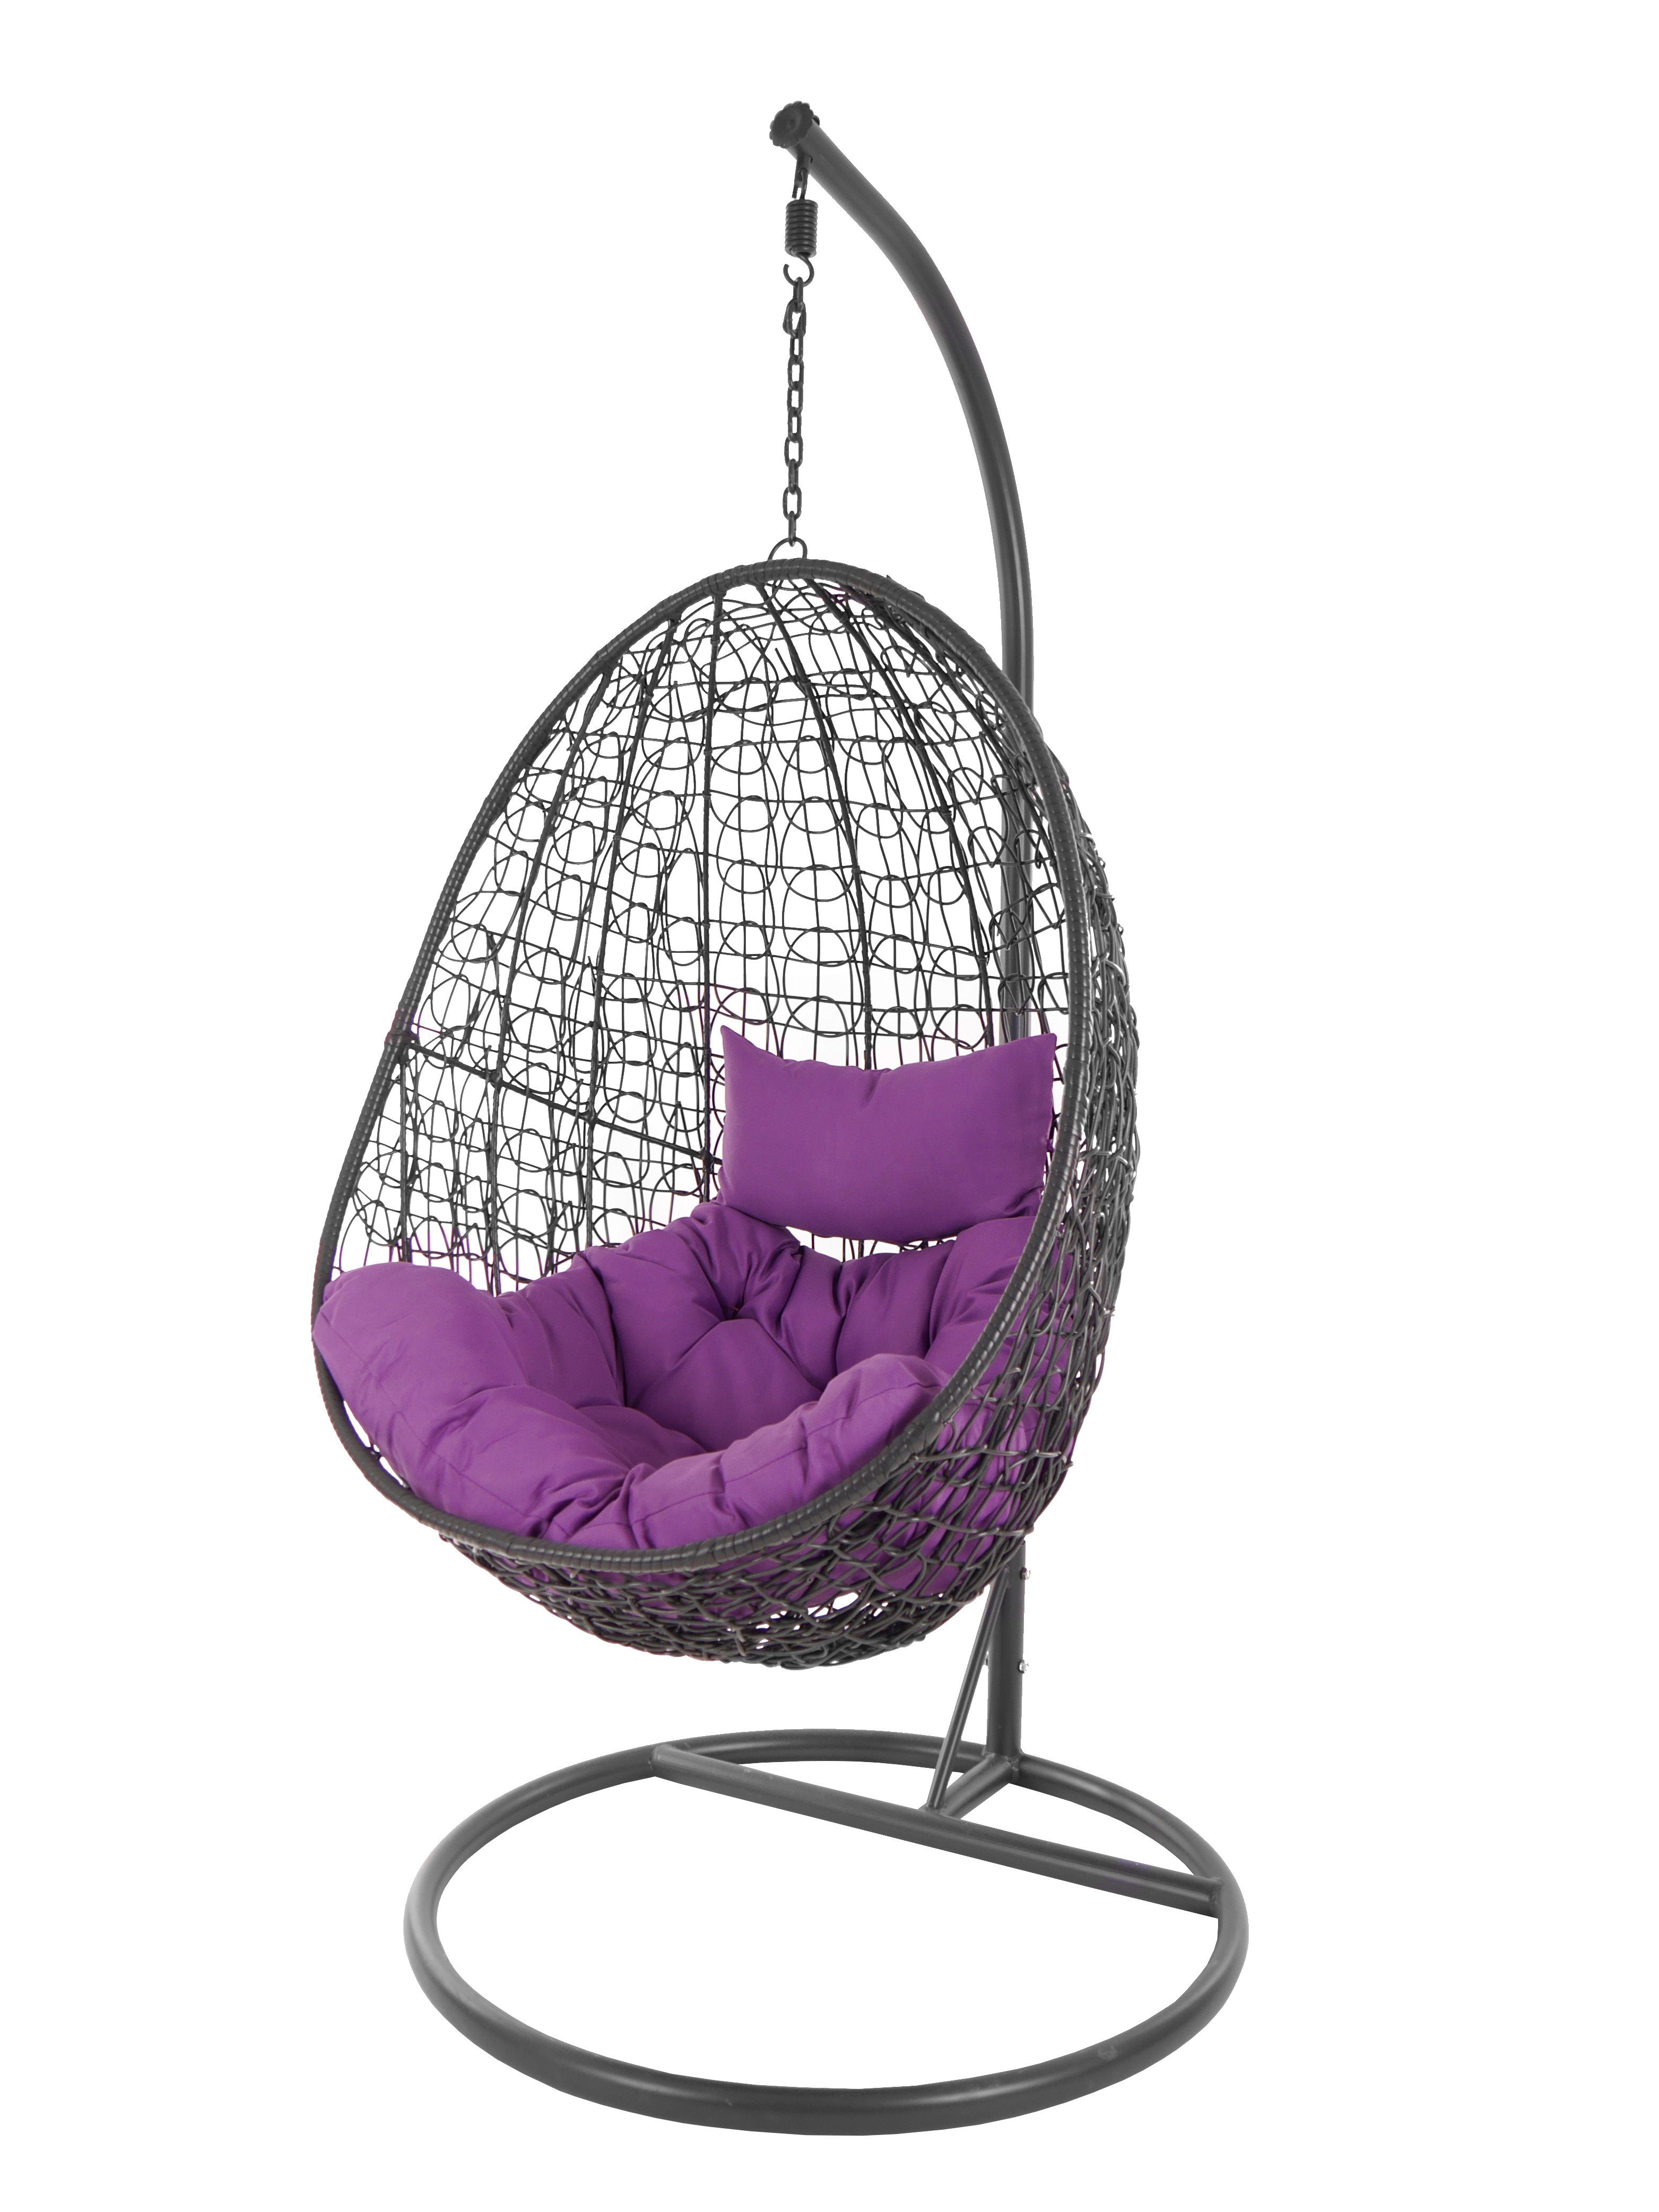 KIDEO Hängesessel Hängesessel Capdepera anthrazit, moderner Swing Chair, Schwebesessel mit Gestell und Kissen, Loungemöbel lila (4050 violet) | Hängesessel